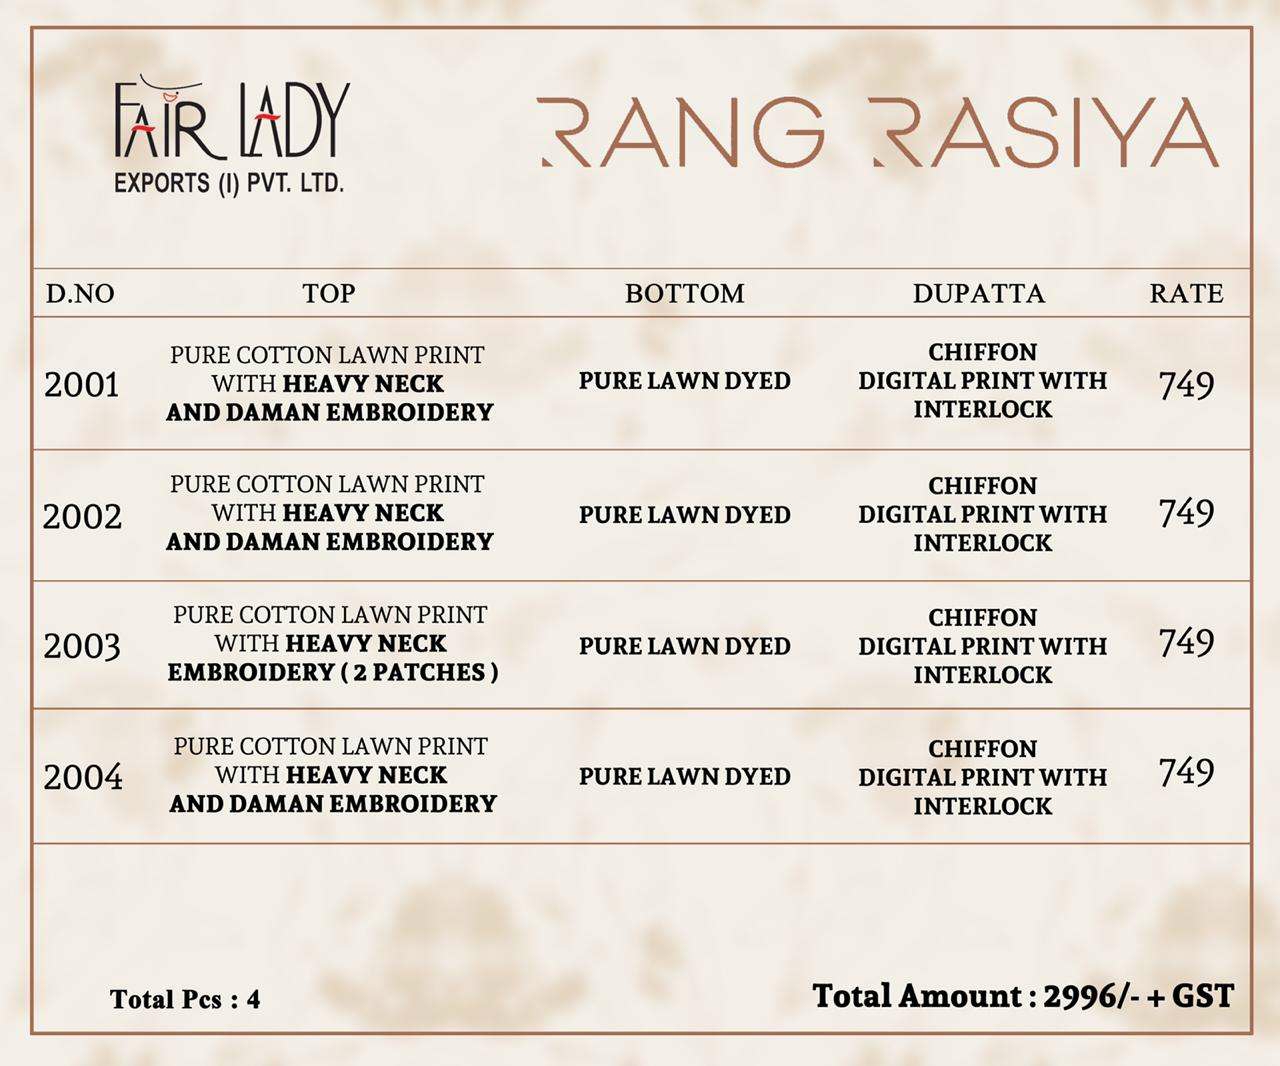 Fairlady rang rasiya pure cotton printed dress Material at wholesale rate